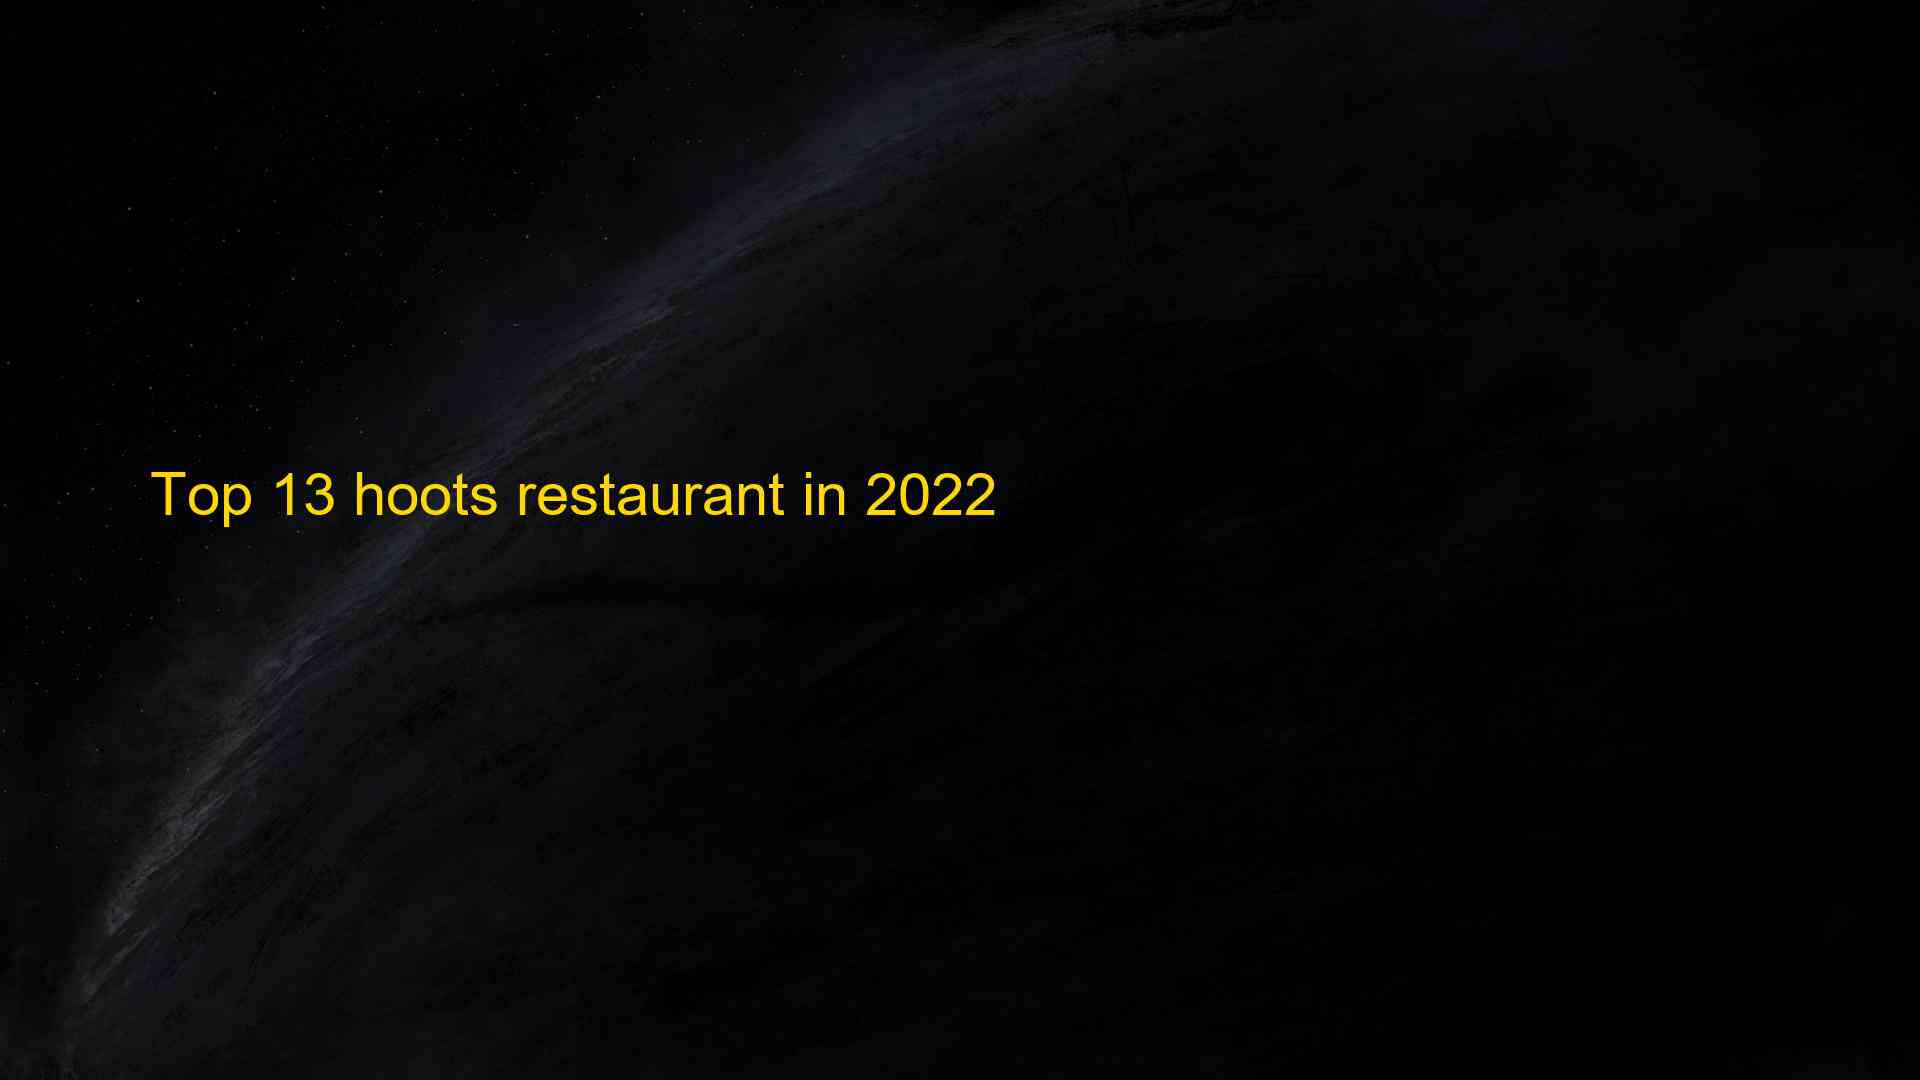 Top 13 hoots restaurant in 2022 1663503848